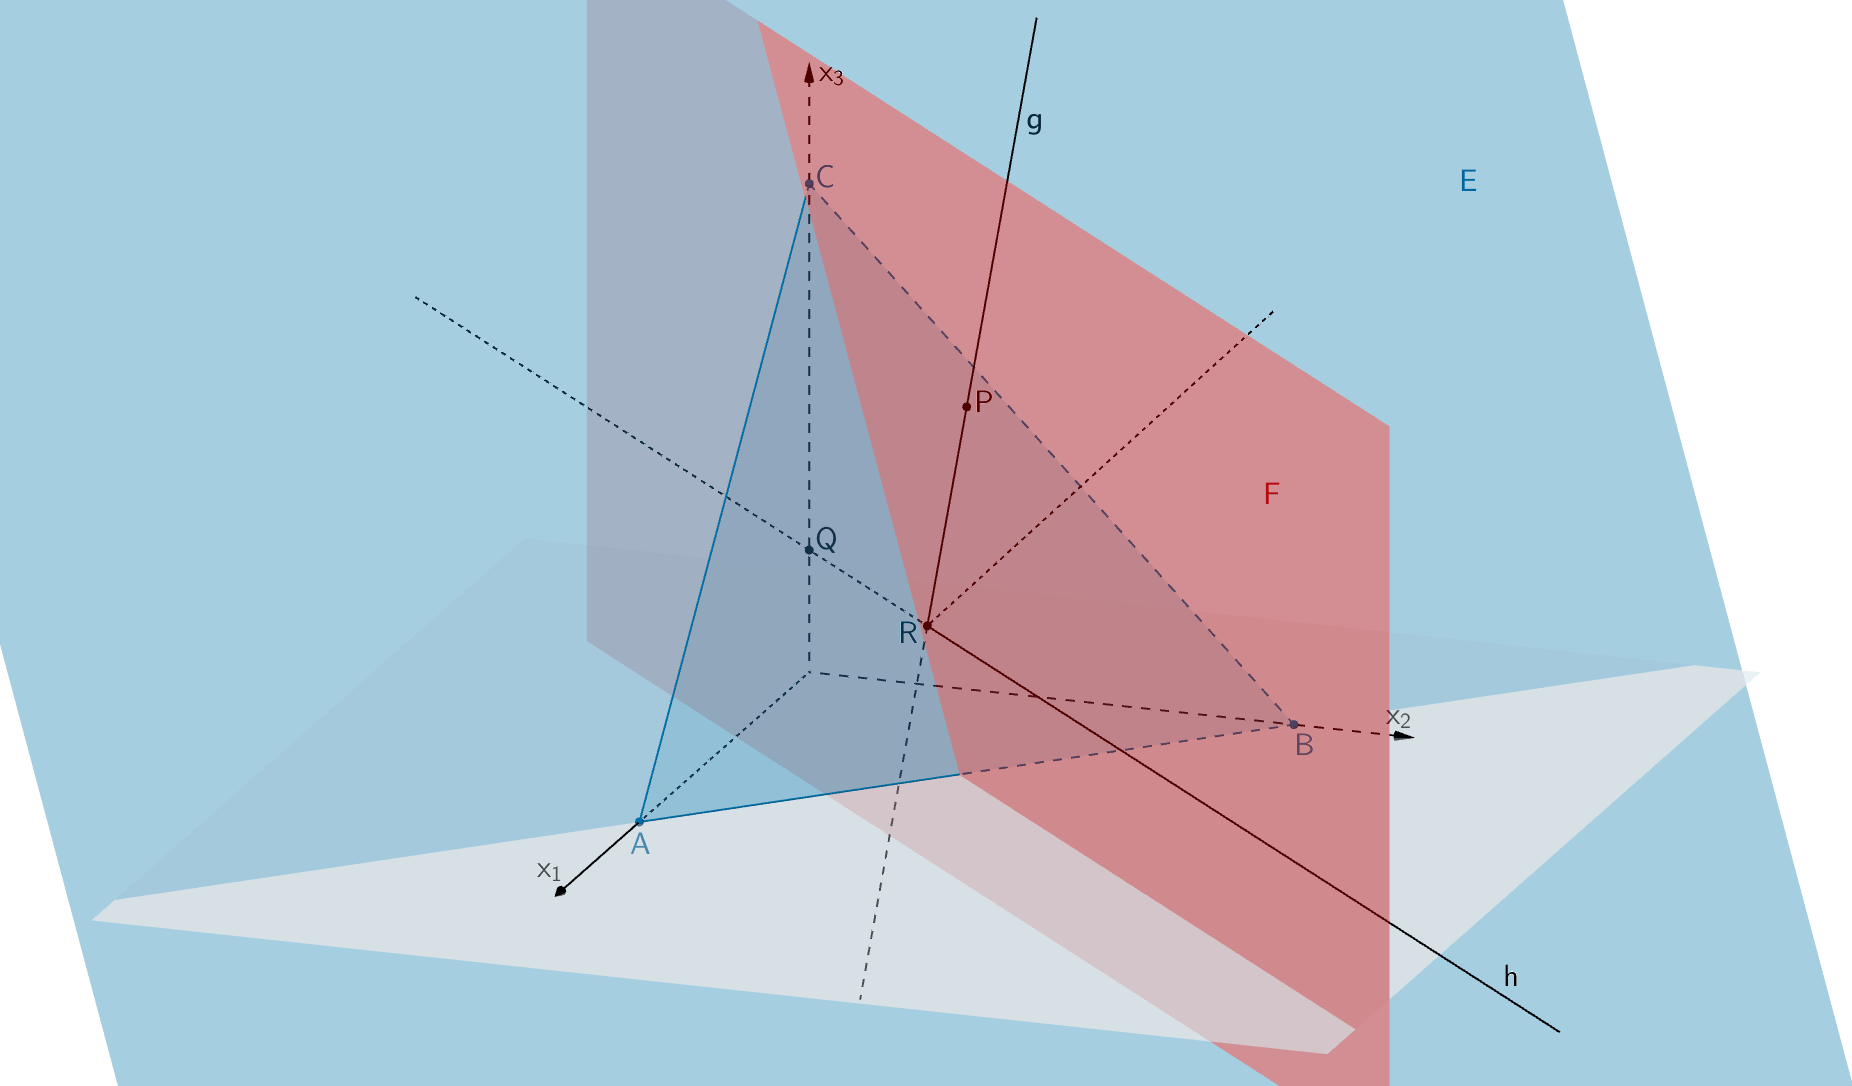 Ebene E, Ebene F, Dreieck ABC, Gerade g (einfallender Lichtstrahl) und Gerade h (reflektierter Lichtstrahl)